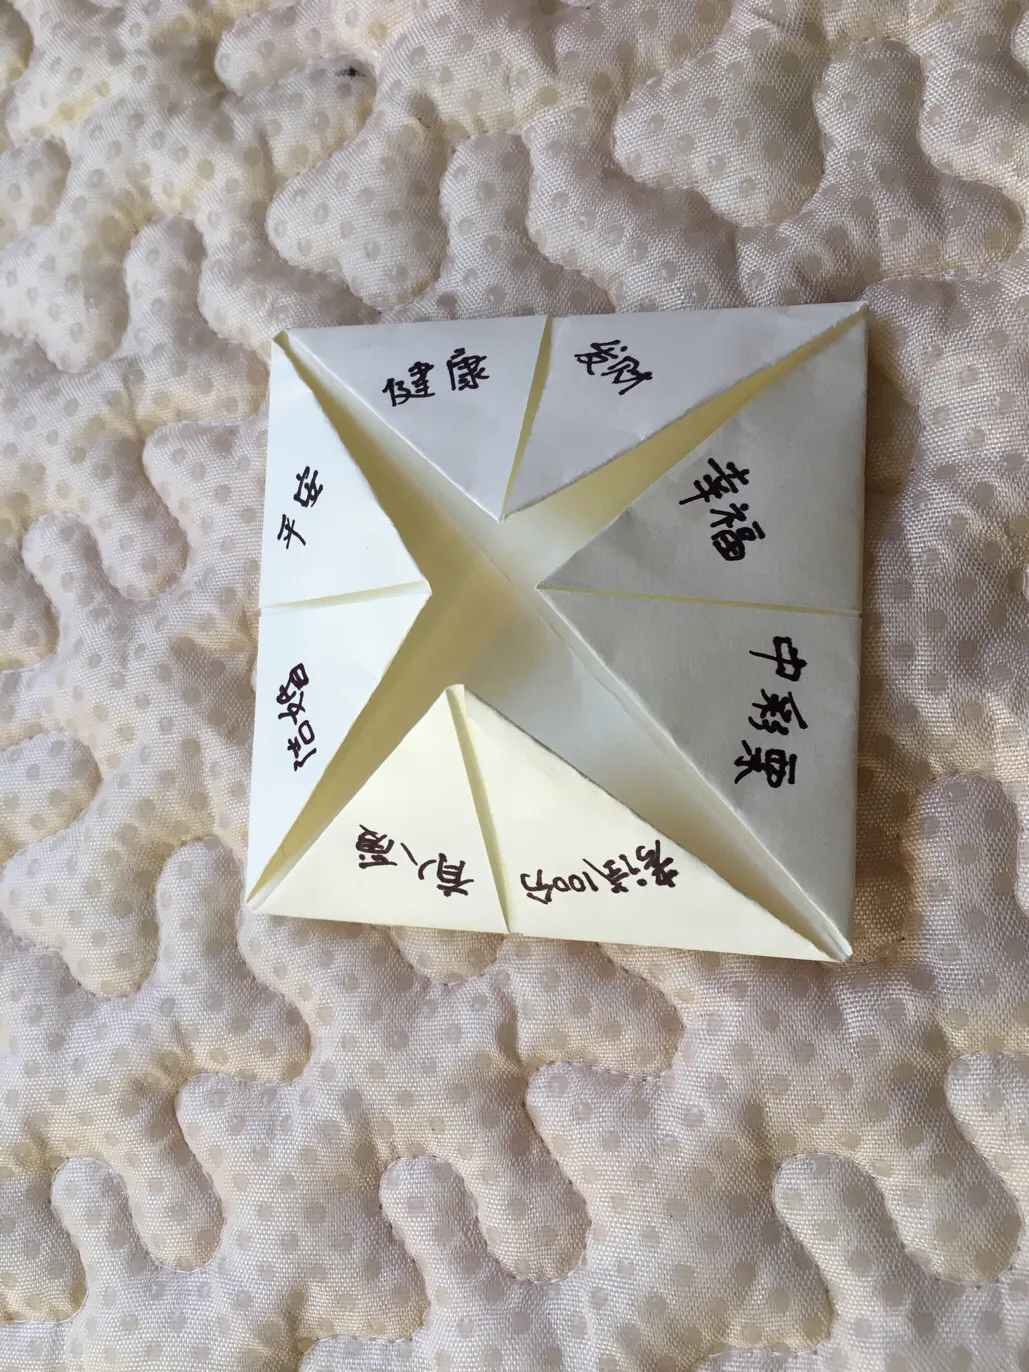 80后玩过的游戏1:东南西北折纸,你还记得方法和玩法吗?